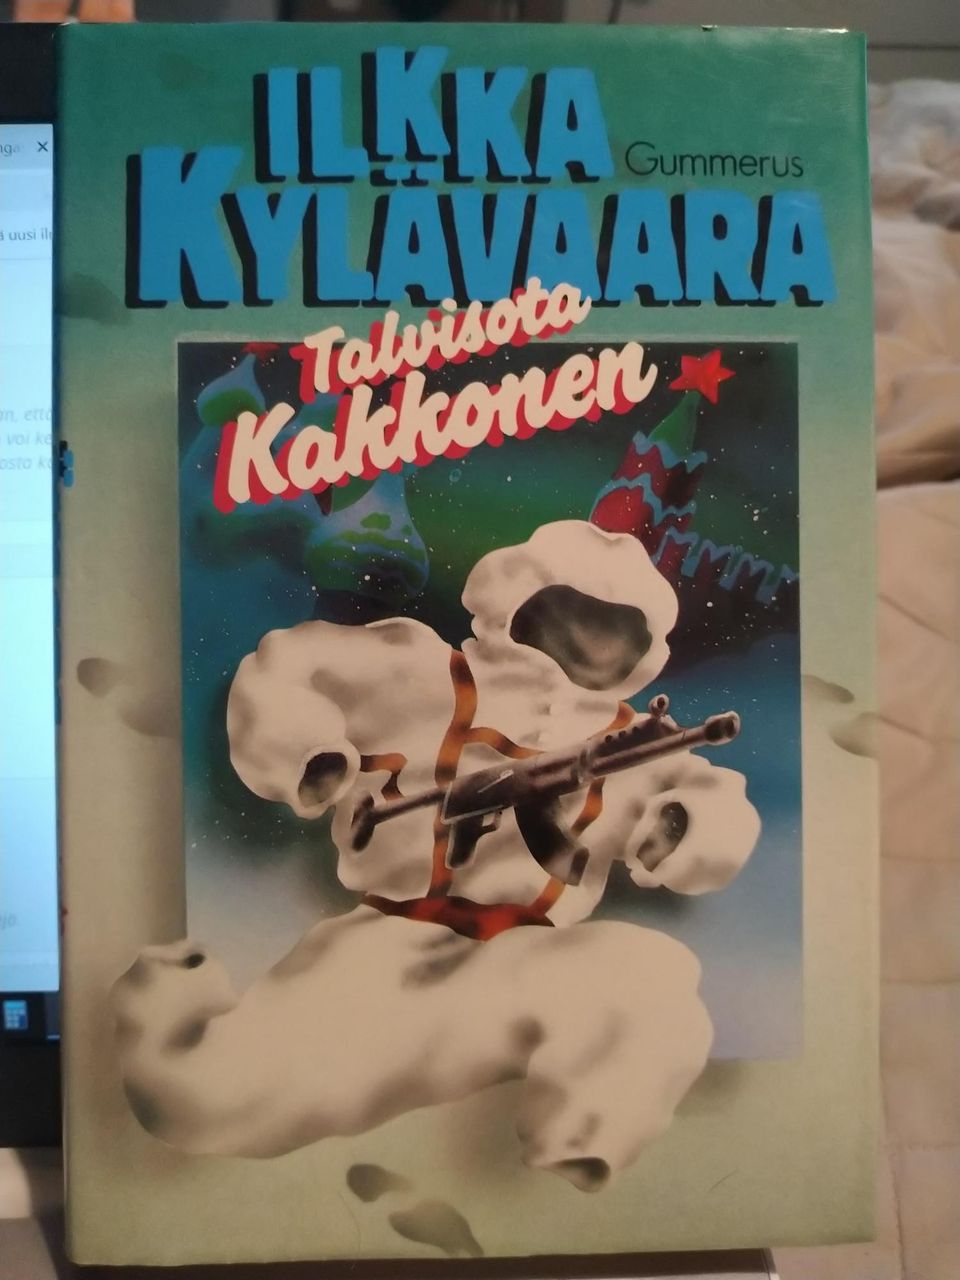 Talvisota kakkonen - Ilkka Kylävaara